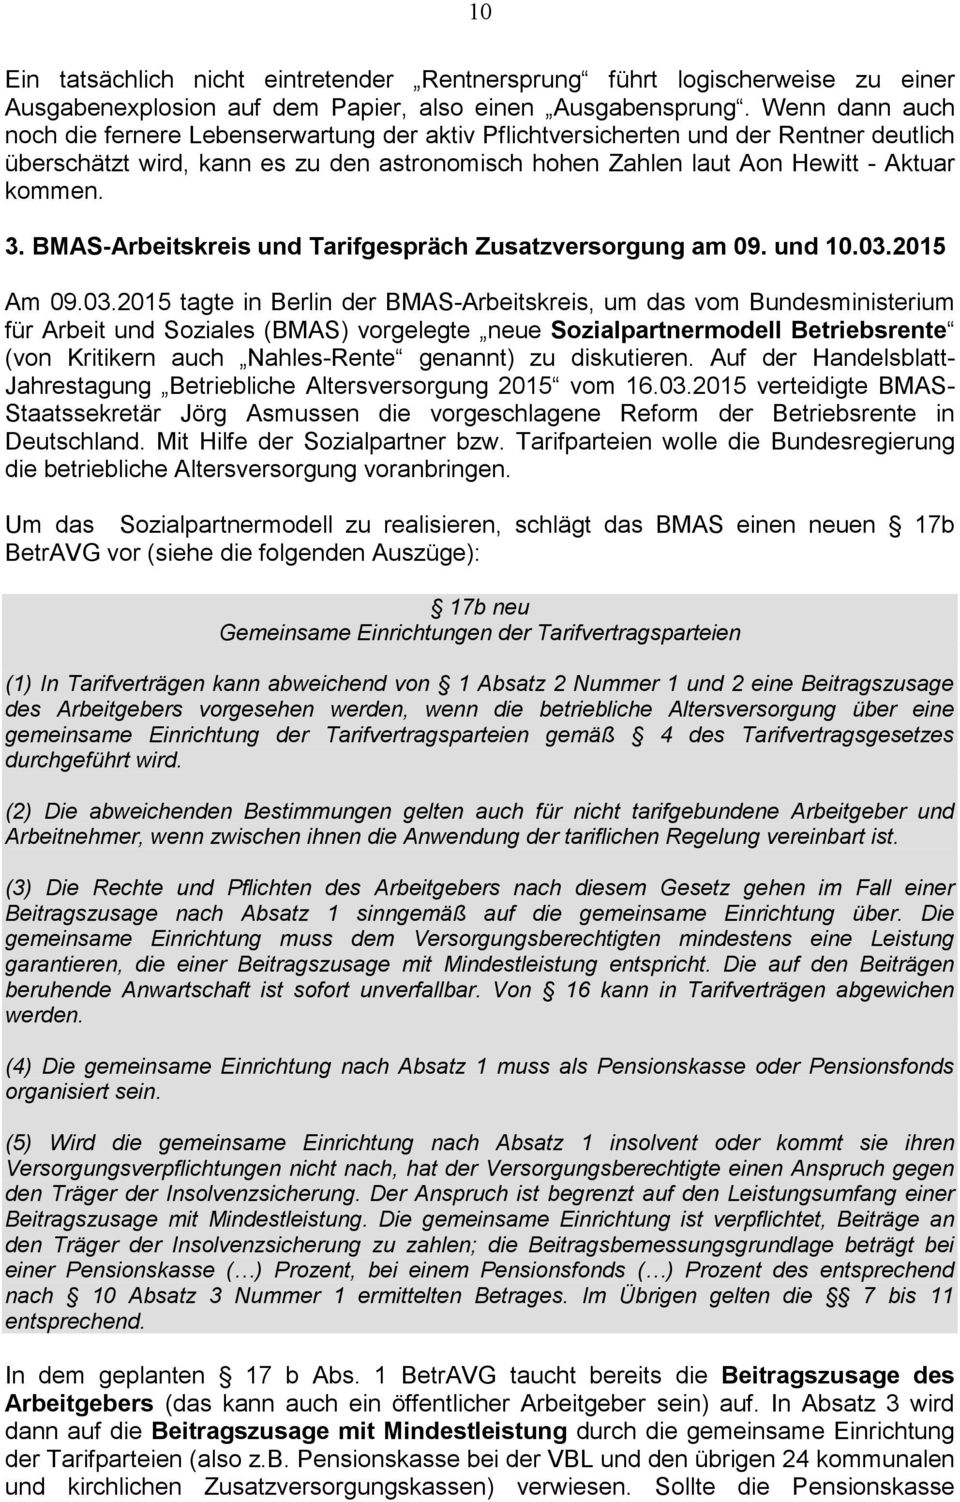 BMAS-Arbeitskreis und Tarifgespräch Zusatzversorgung am 09. und 10.03.